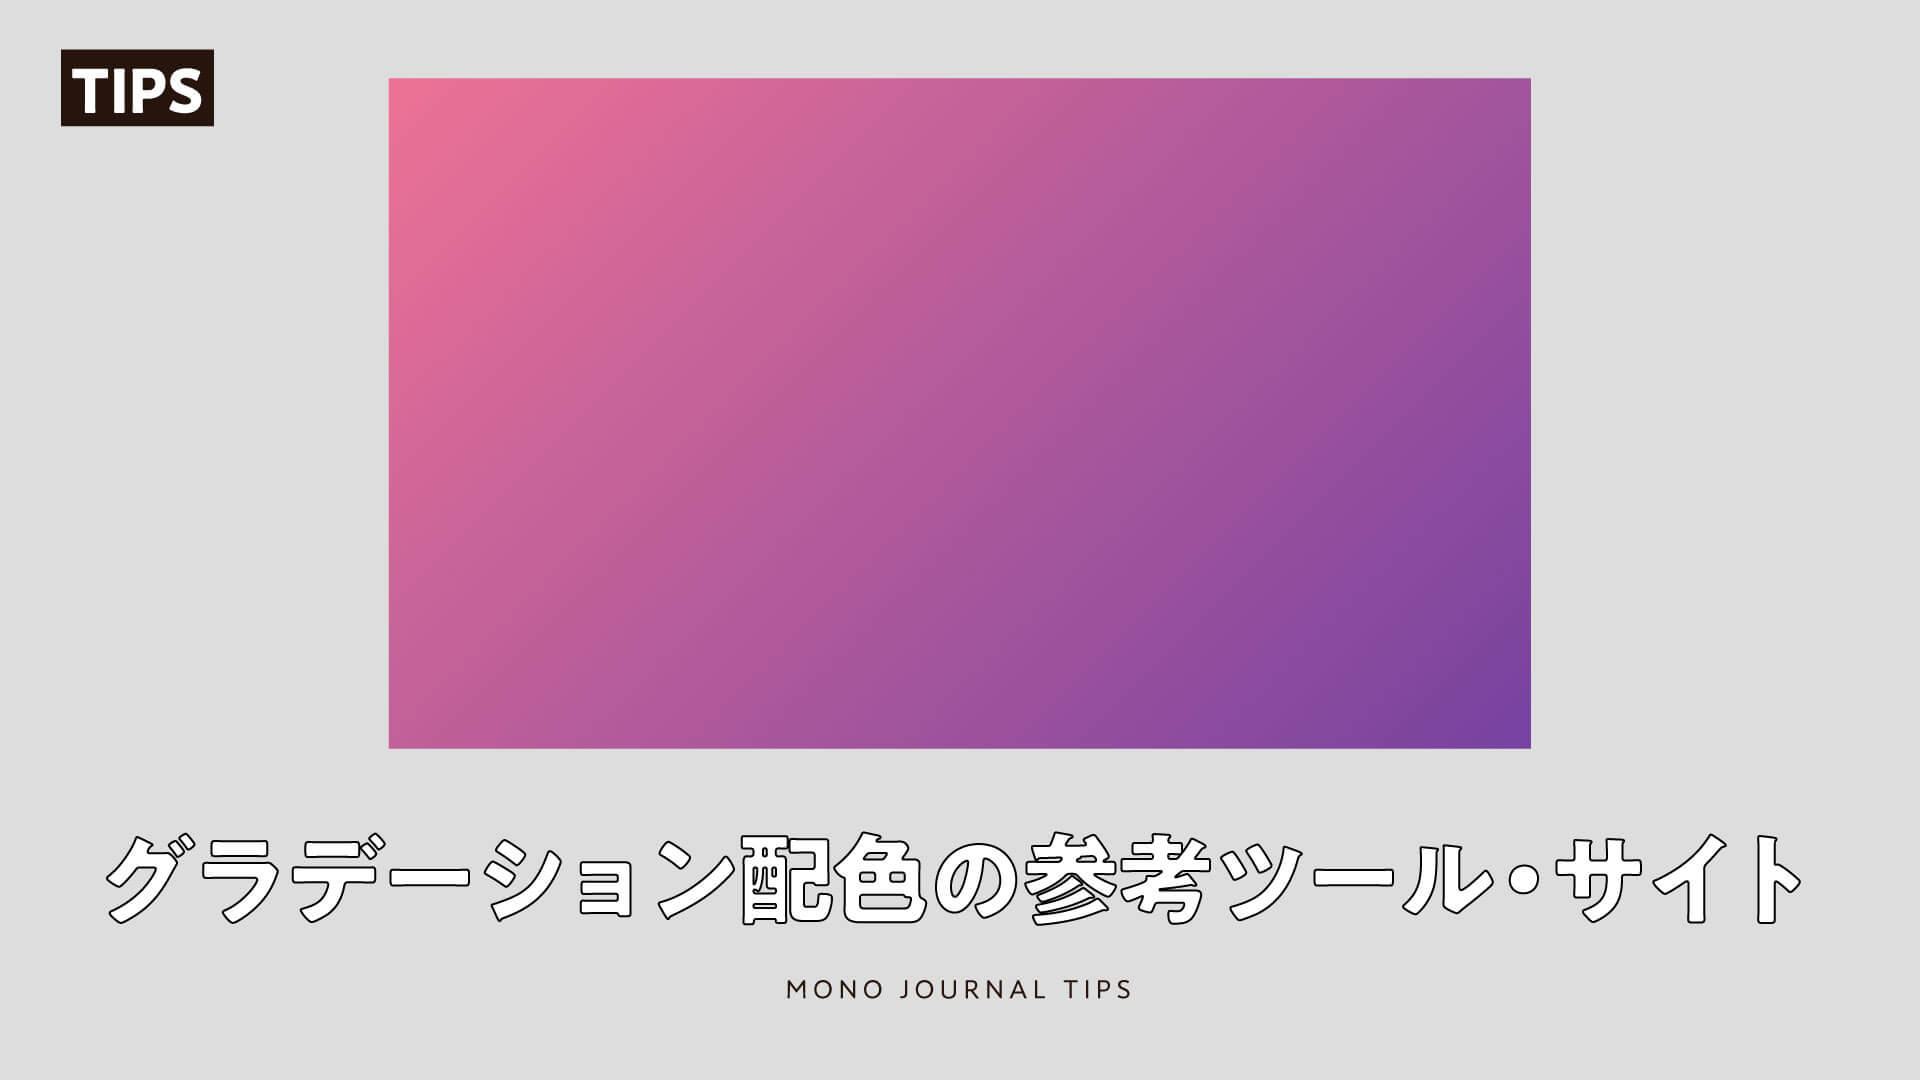 デザイン 綺麗なグラデーション配色の選び方と便利なツール サイトを紹介 デザイン事務所 Mono Journal